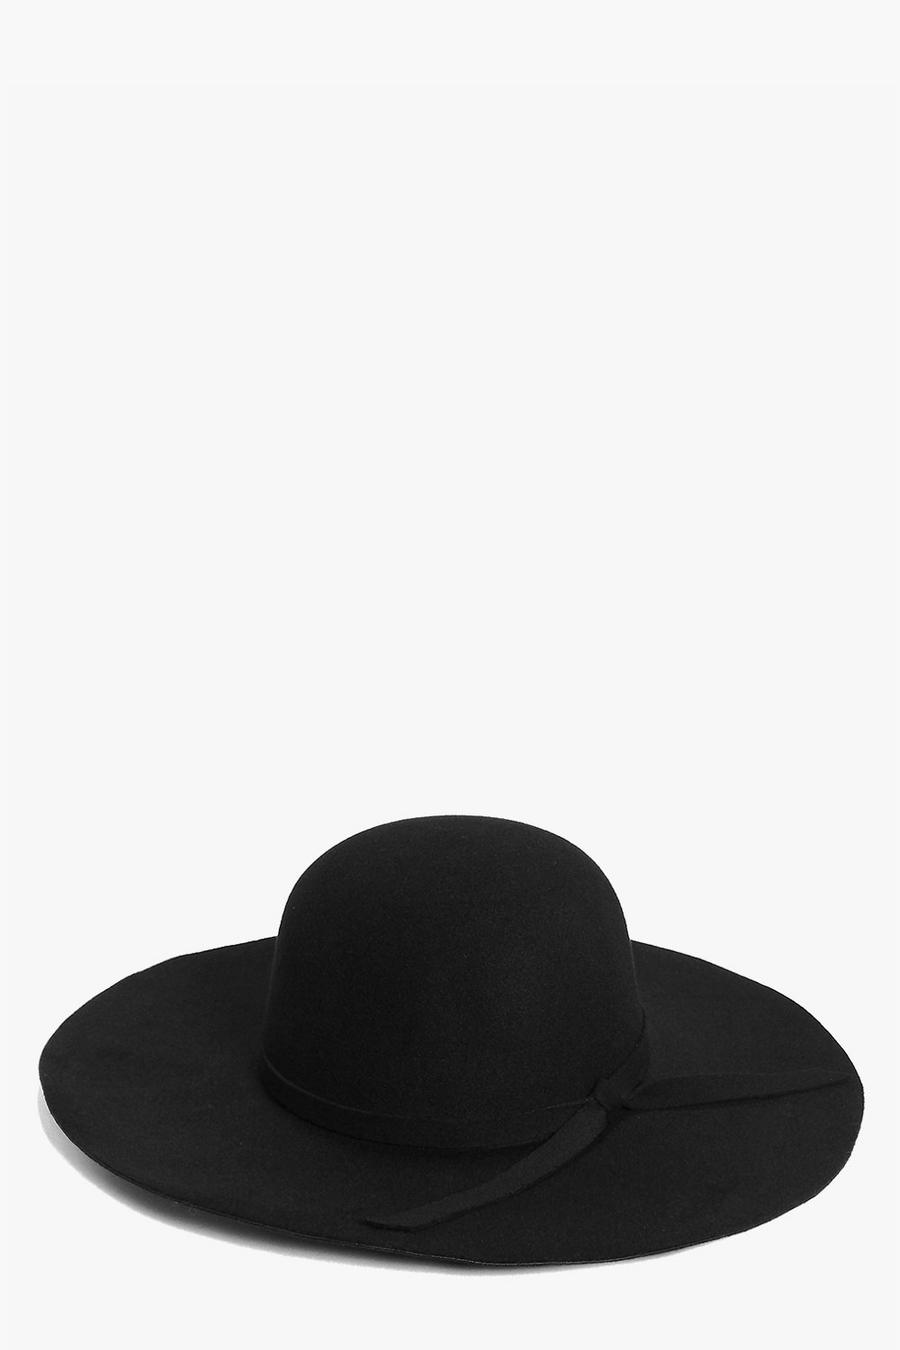 שחור nero כובע גמיש בגימור סרט